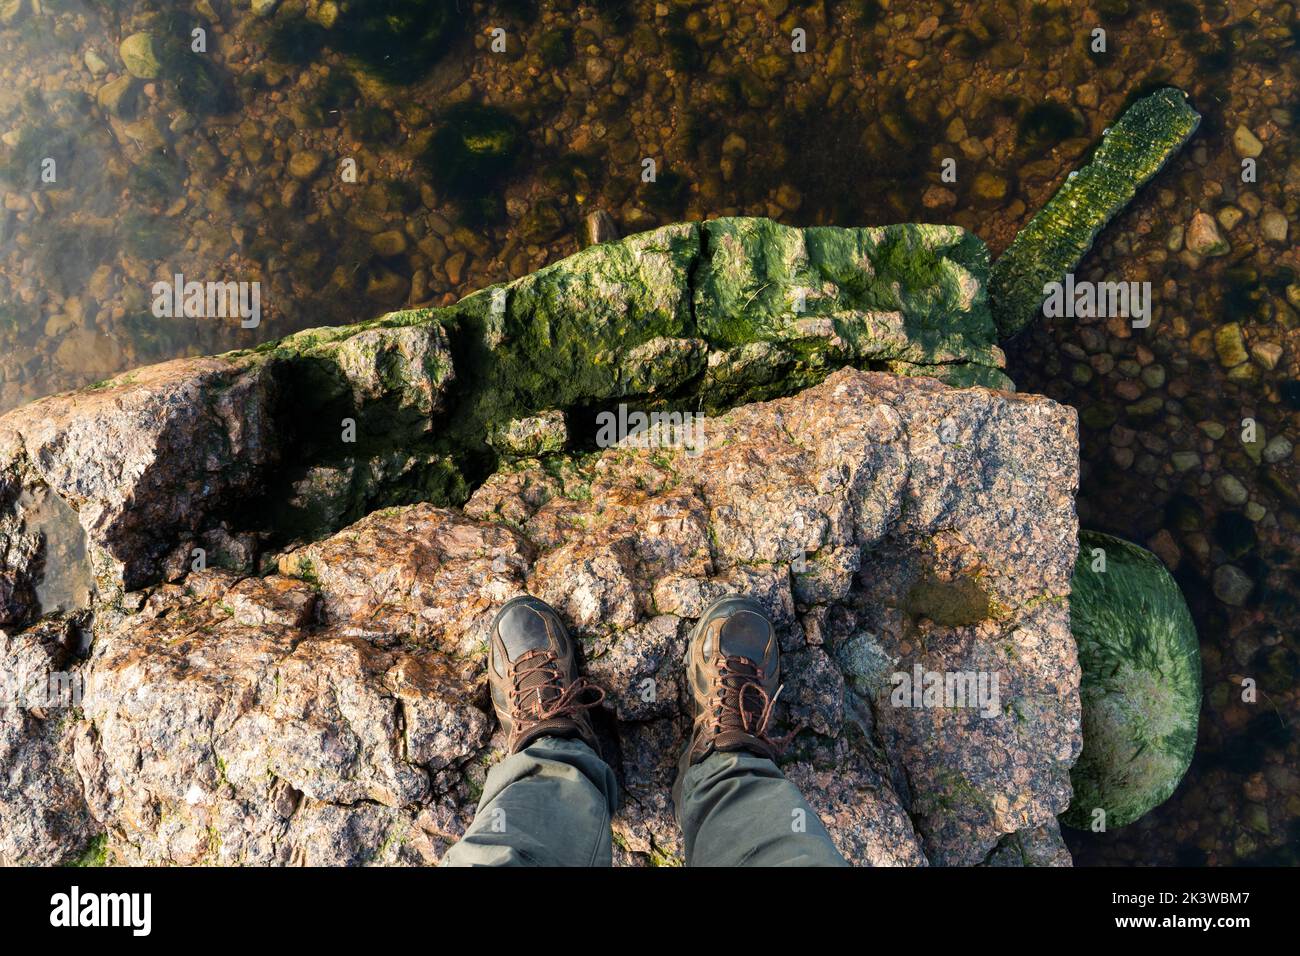 Pies de un hombre con zapatos de trekking sobre una piedra costera. Foto vertical de estilo de vida de viaje Foto de stock